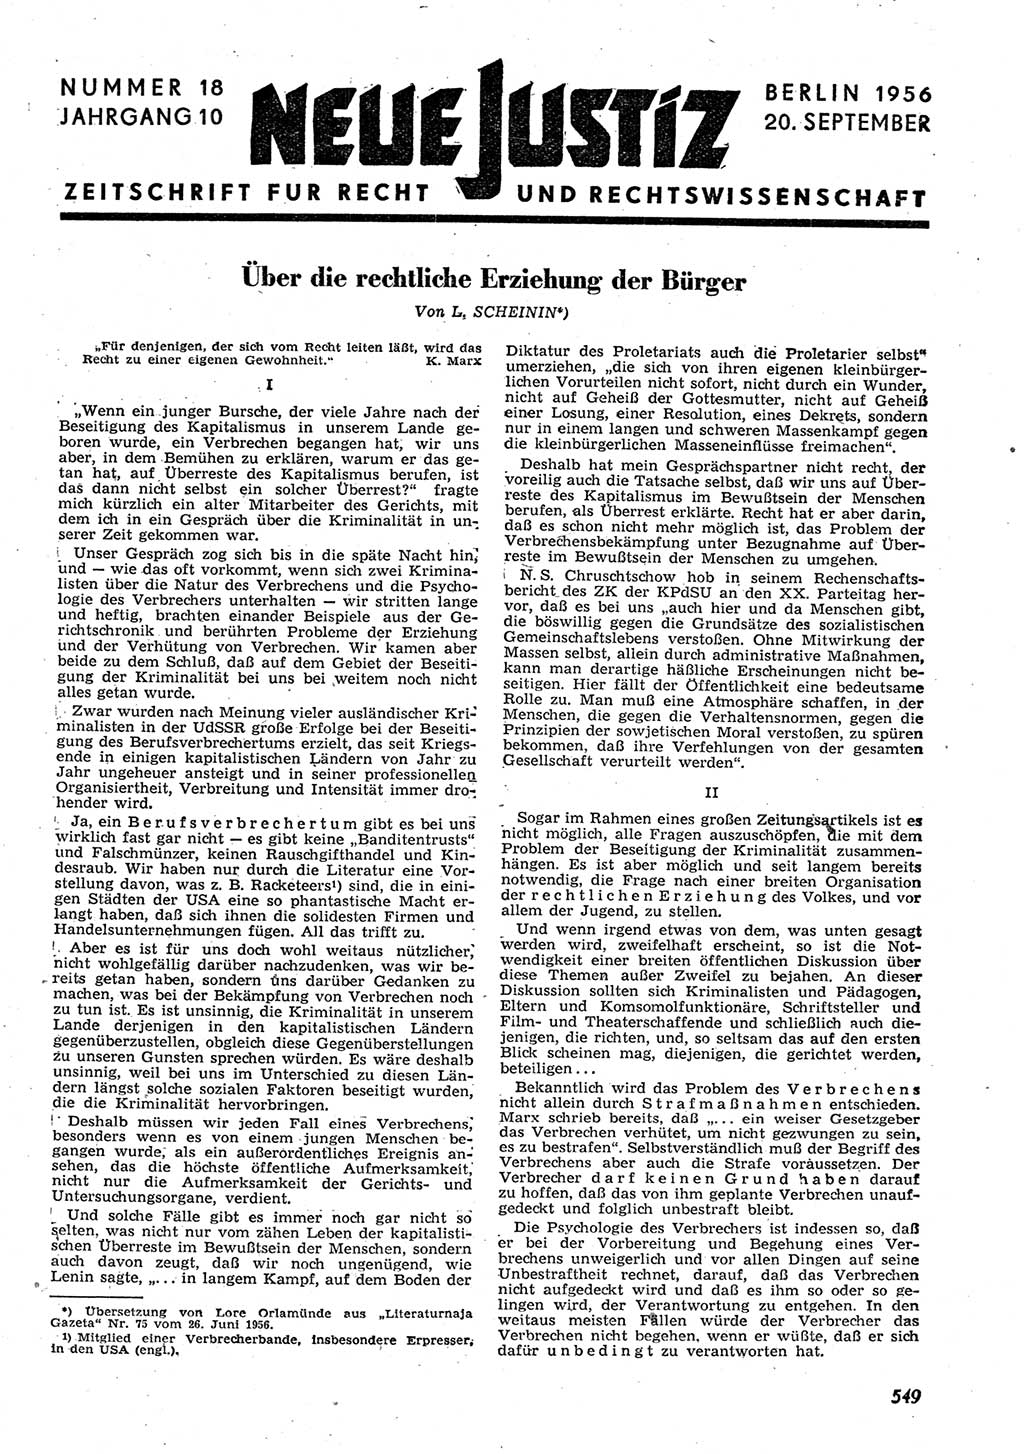 Neue Justiz (NJ), Zeitschrift für Recht und Rechtswissenschaft [Deutsche Demokratische Republik (DDR)], 10. Jahrgang 1956, Seite 549 (NJ DDR 1956, S. 549)